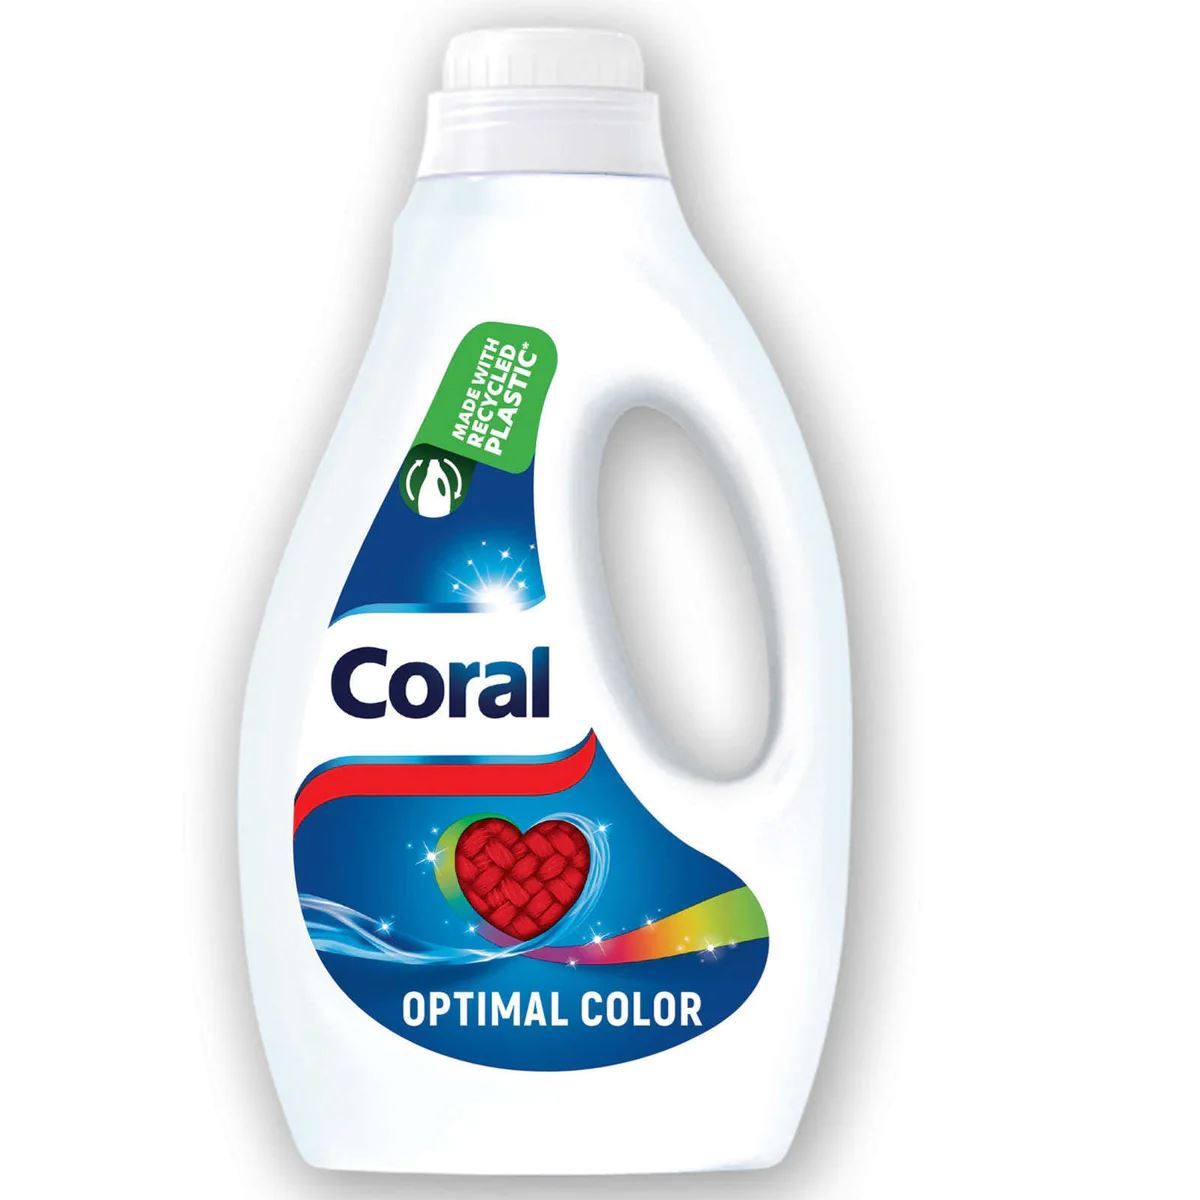 Coral-vloeibaar-wasmiddel-1-17l-26sc-optimal-color